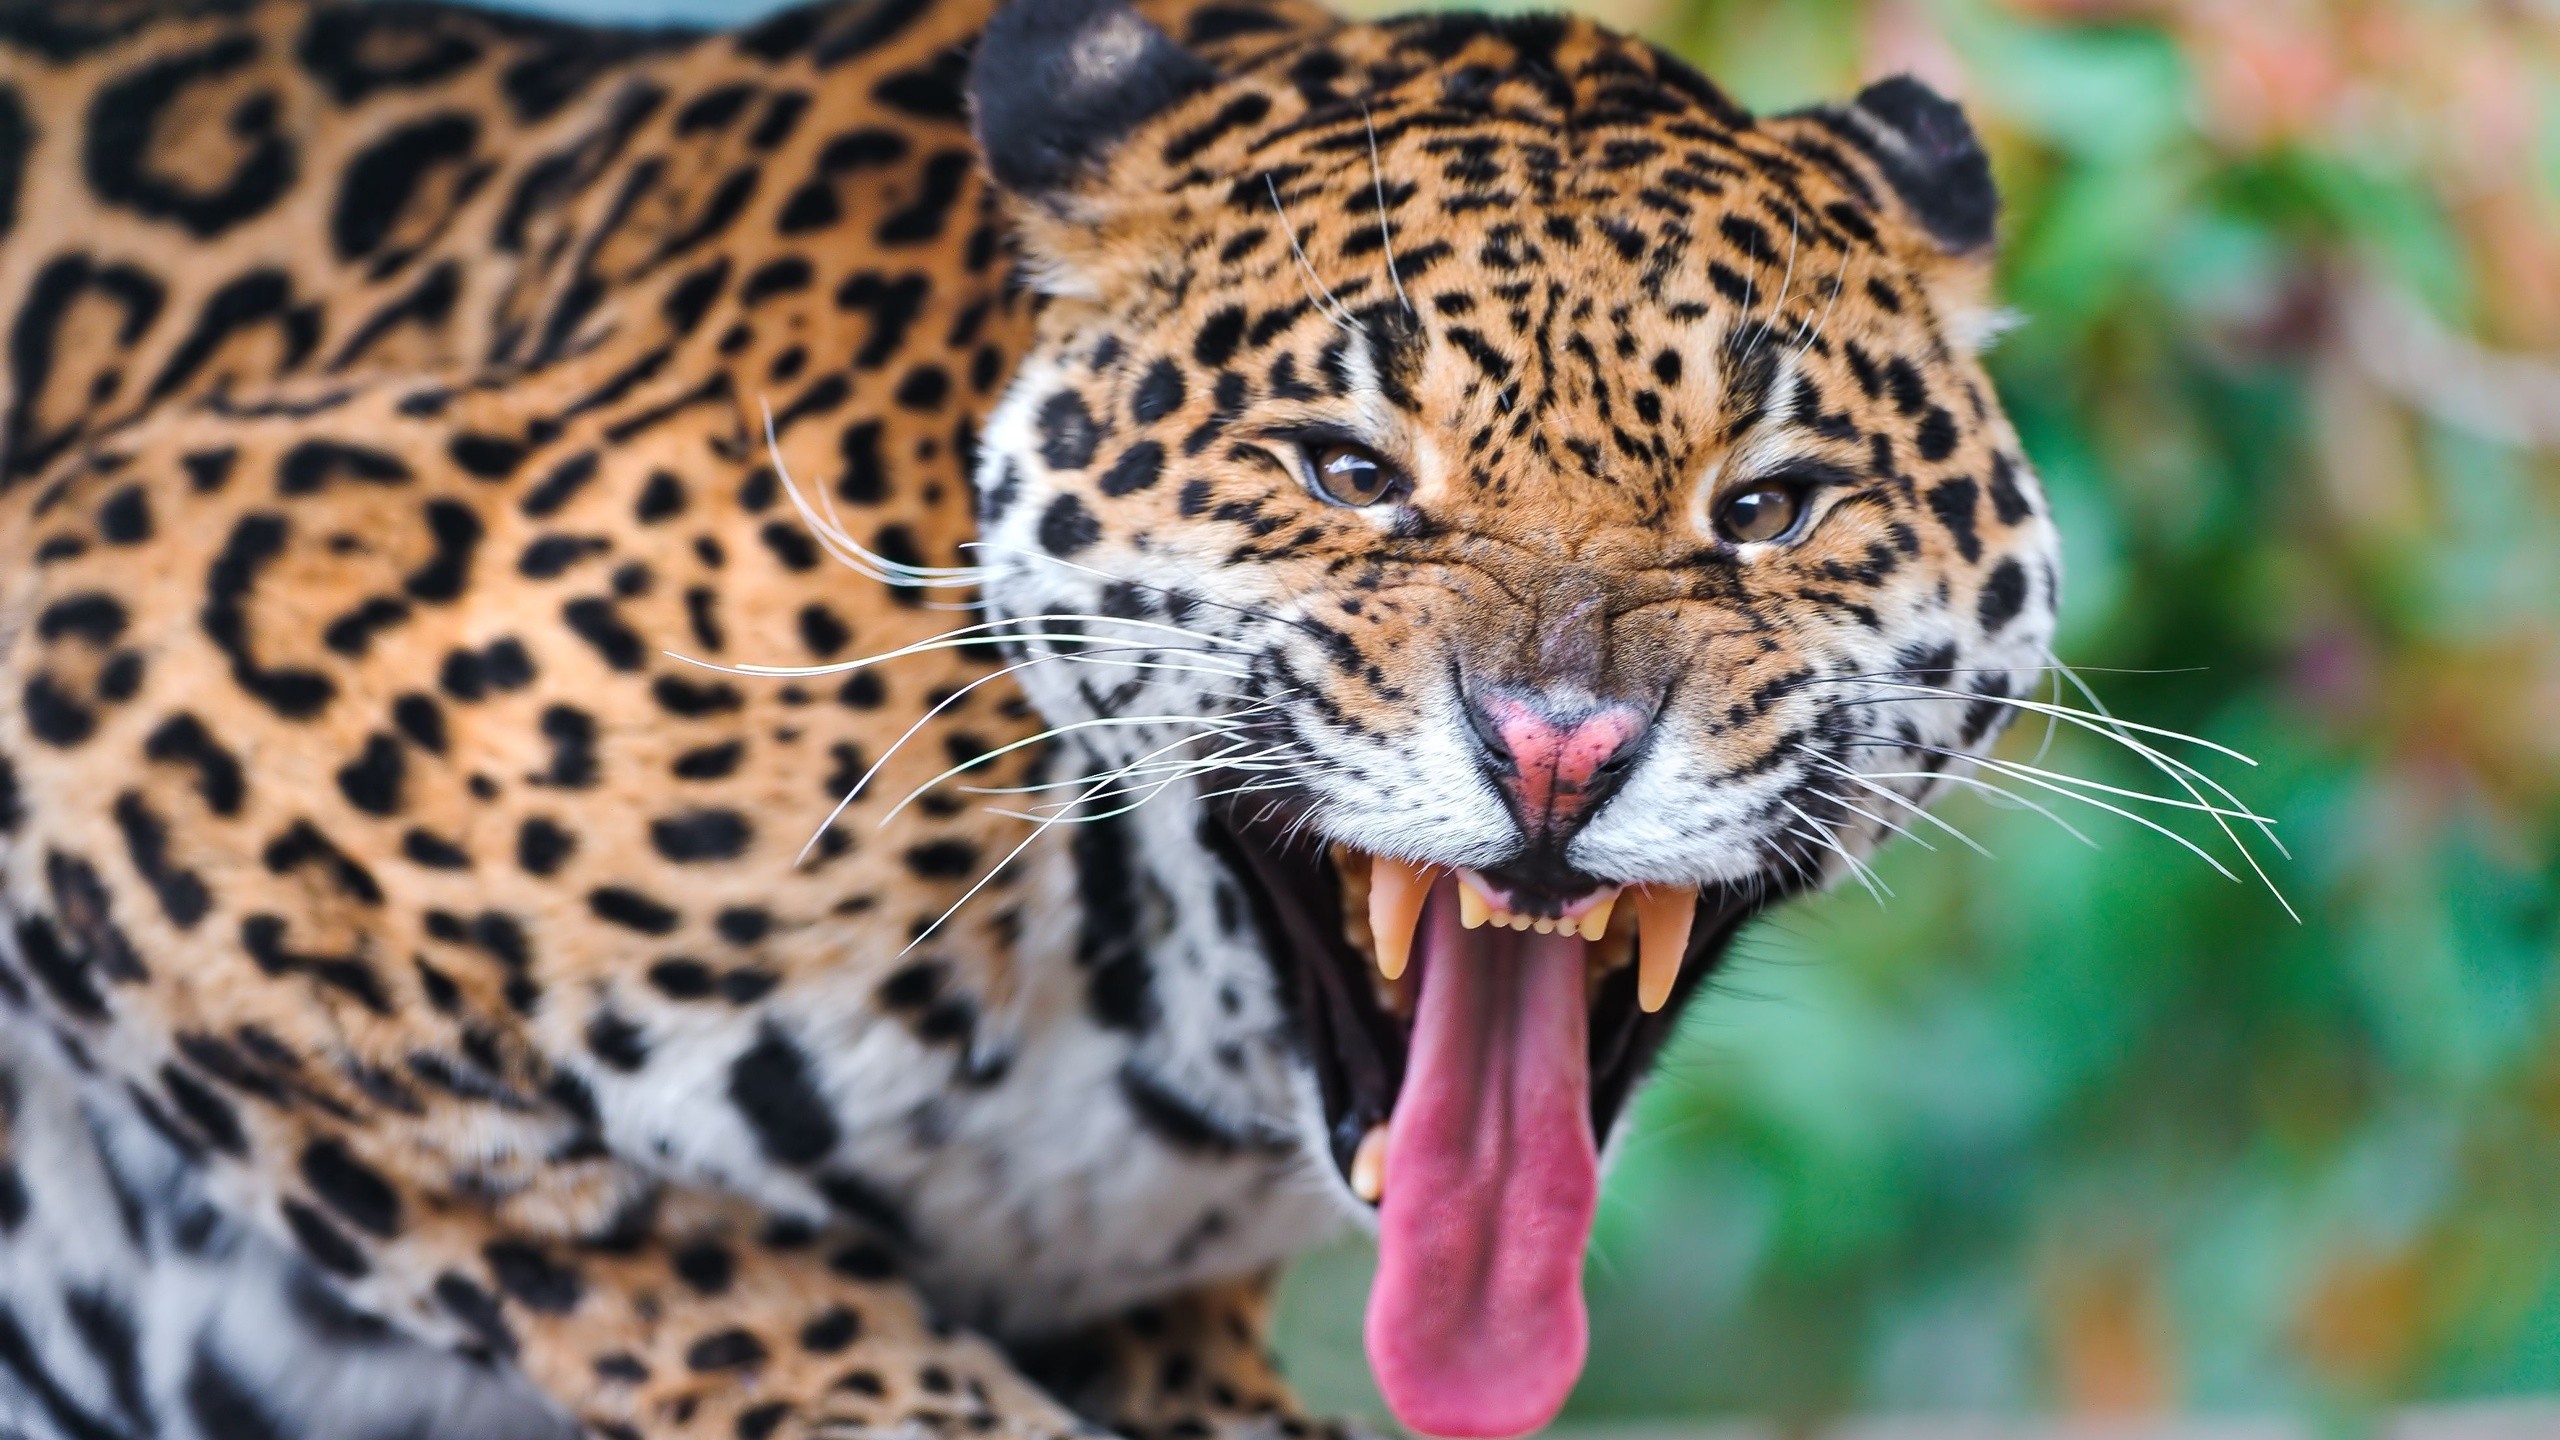 General 2560x1440 animals big cats jaguars mammals tongue out fangs closeup